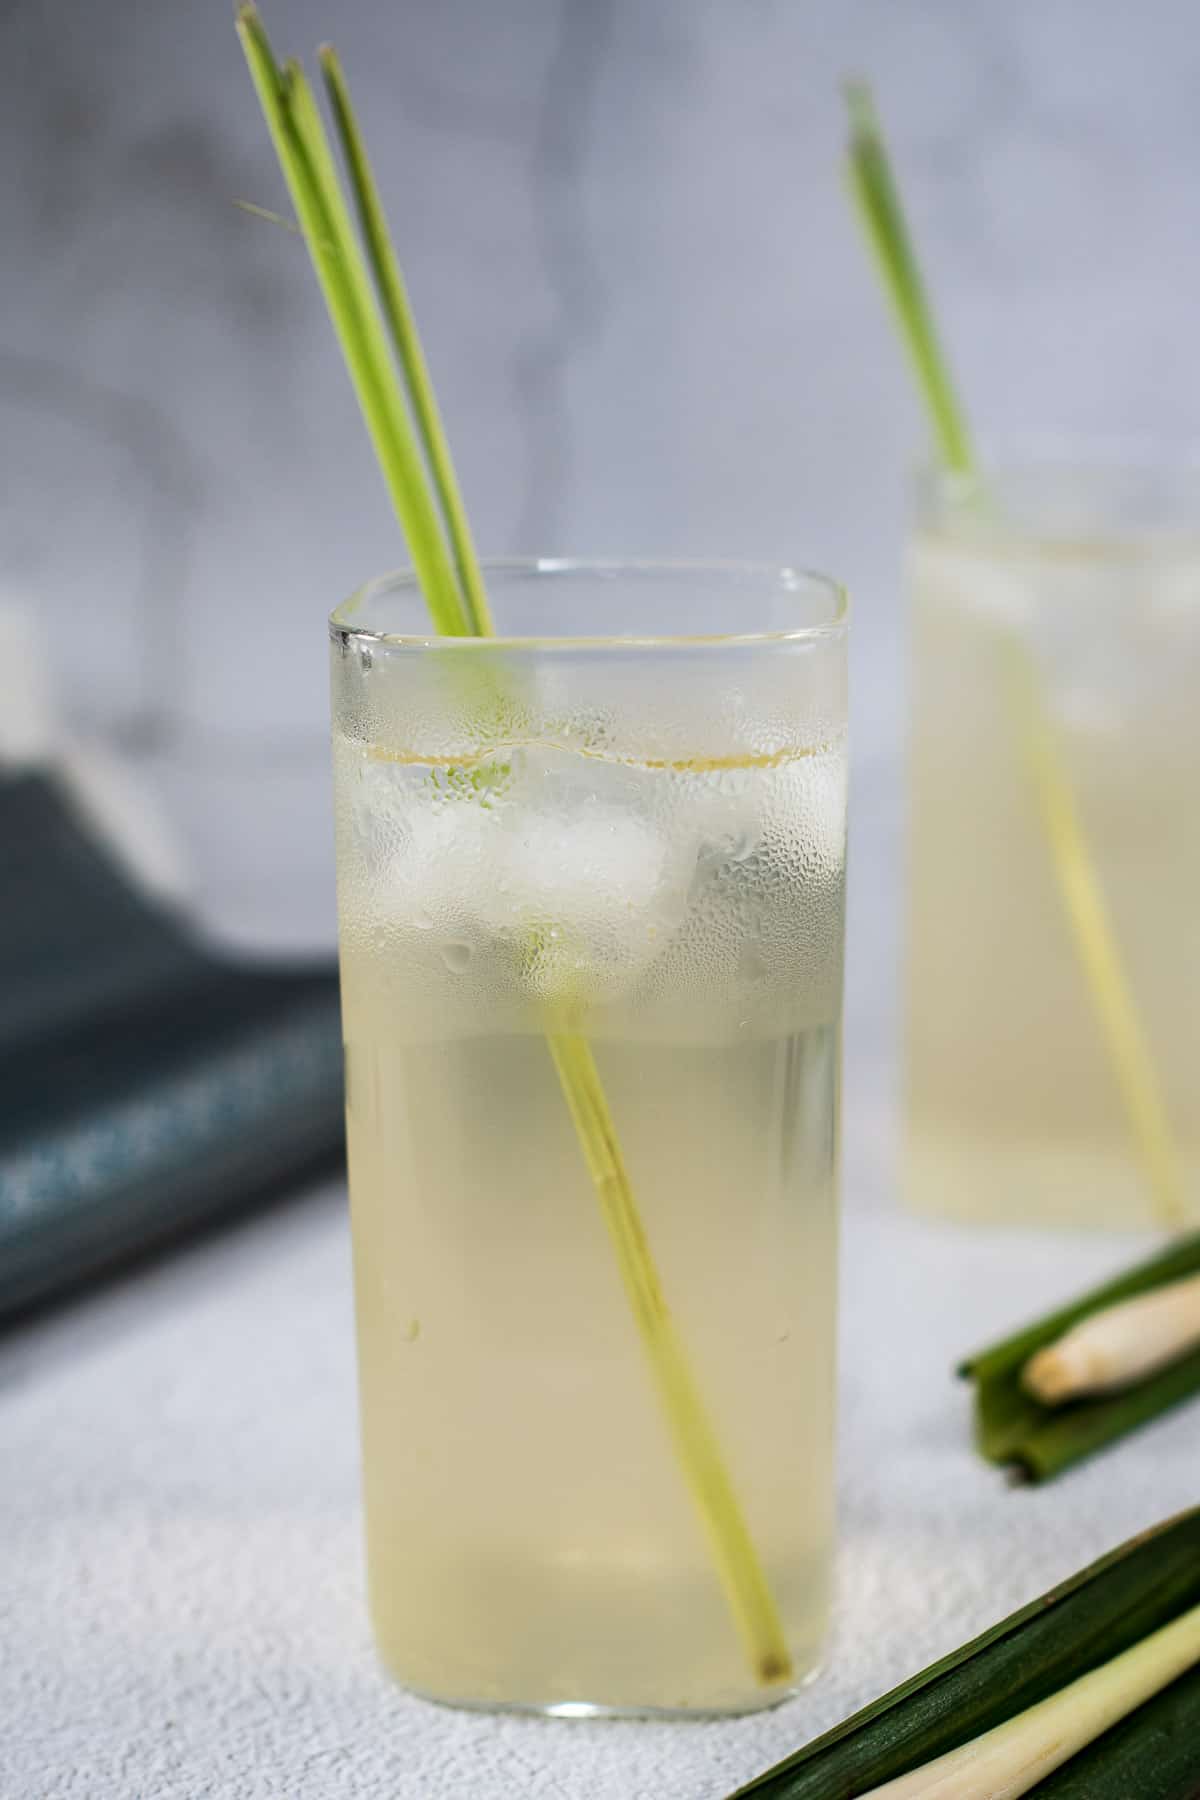 2 glasses of iced lemongrass pandan tea with lemongrass stalks garnish.